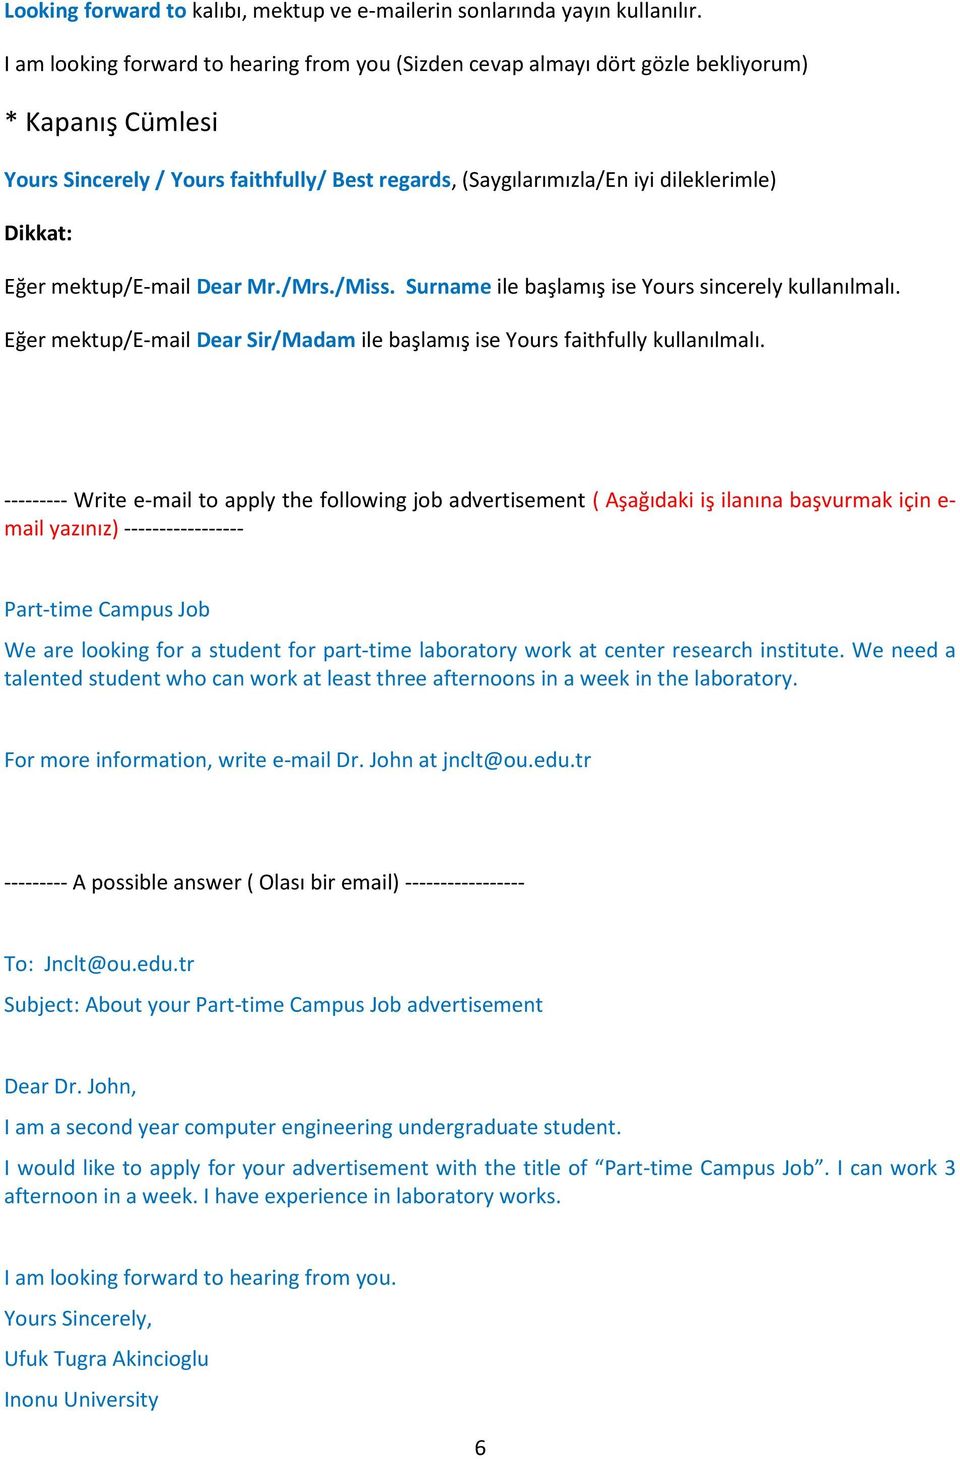 Formal Letter and Templates. (İş Mektubu ve E-posta şablonları) - PDF  Ücretsiz indirin